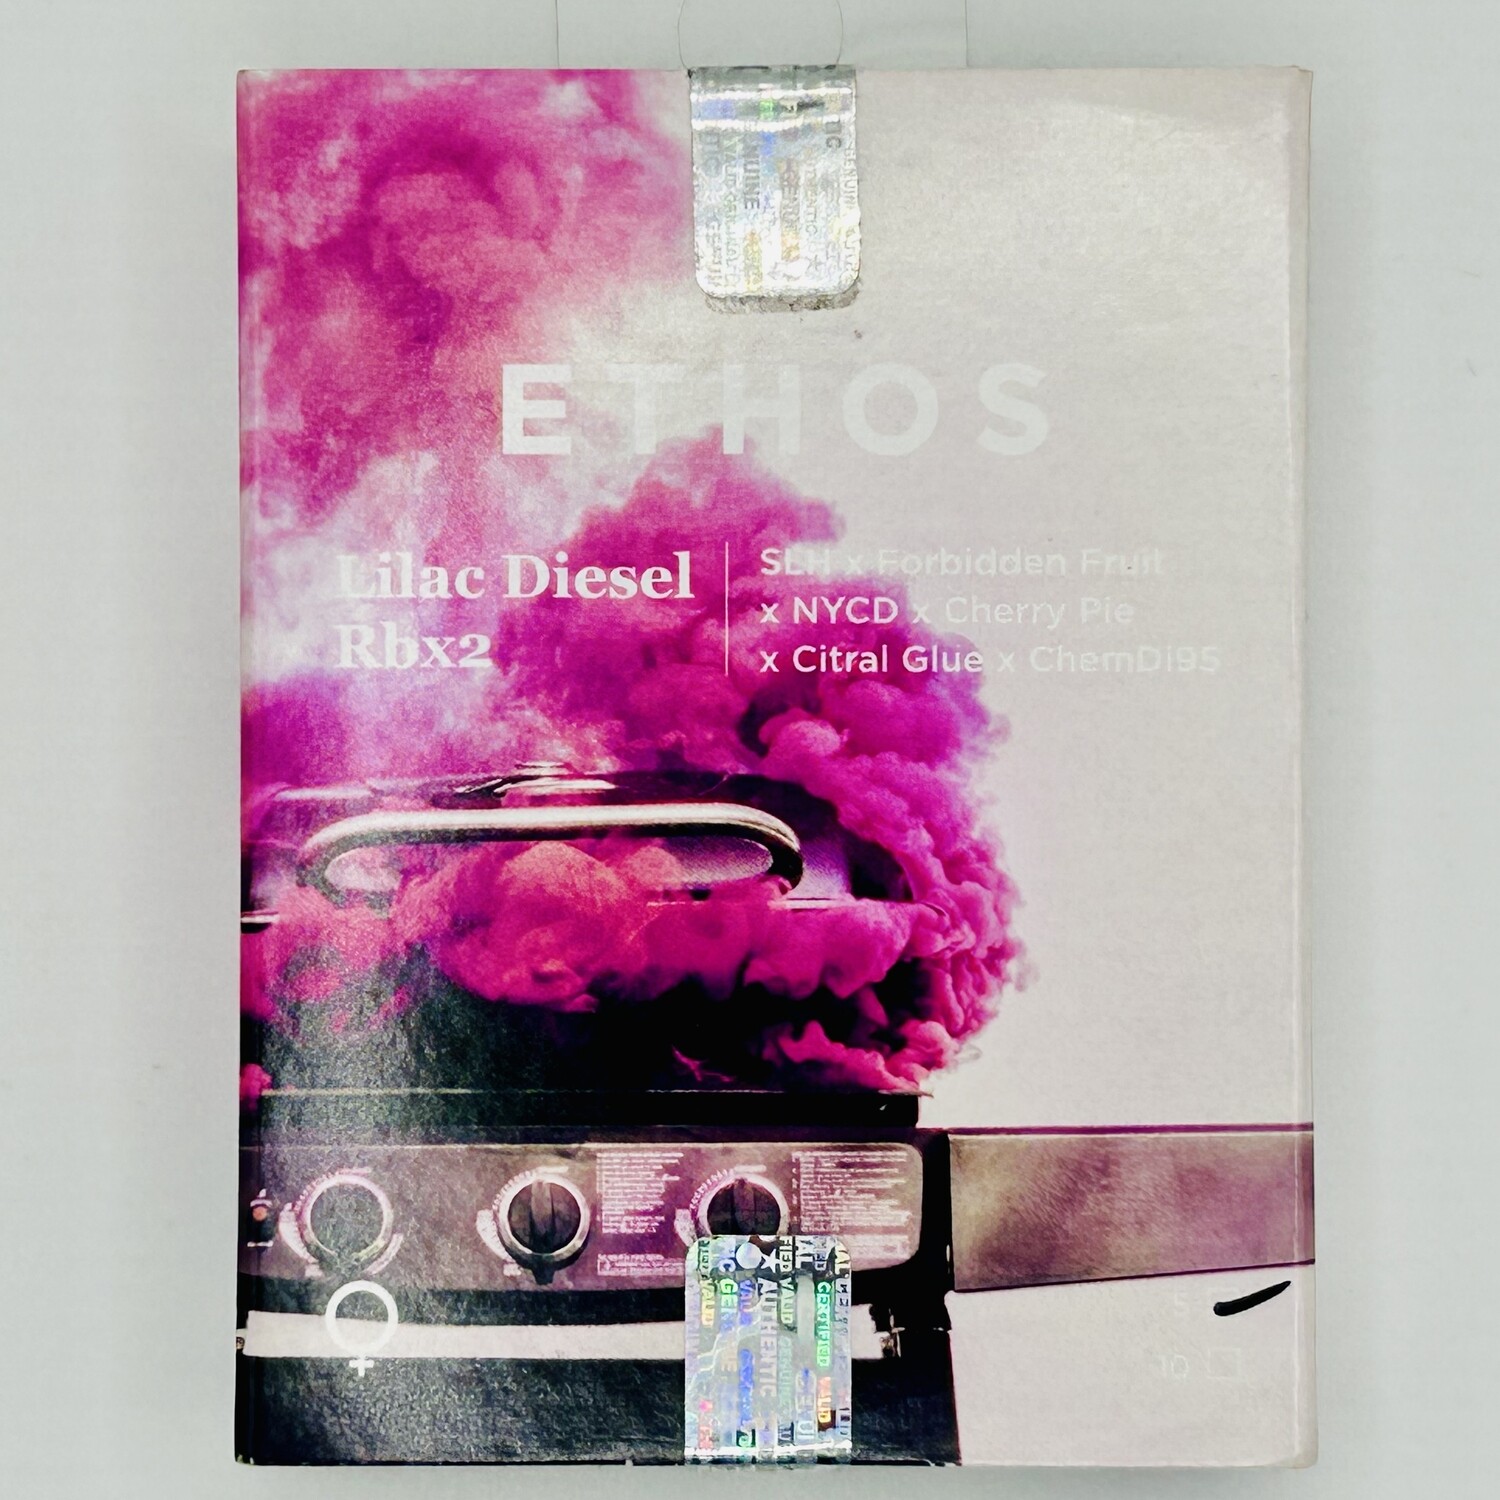 Ethos Lilac Diesel RBx2 (F) 5 Pack